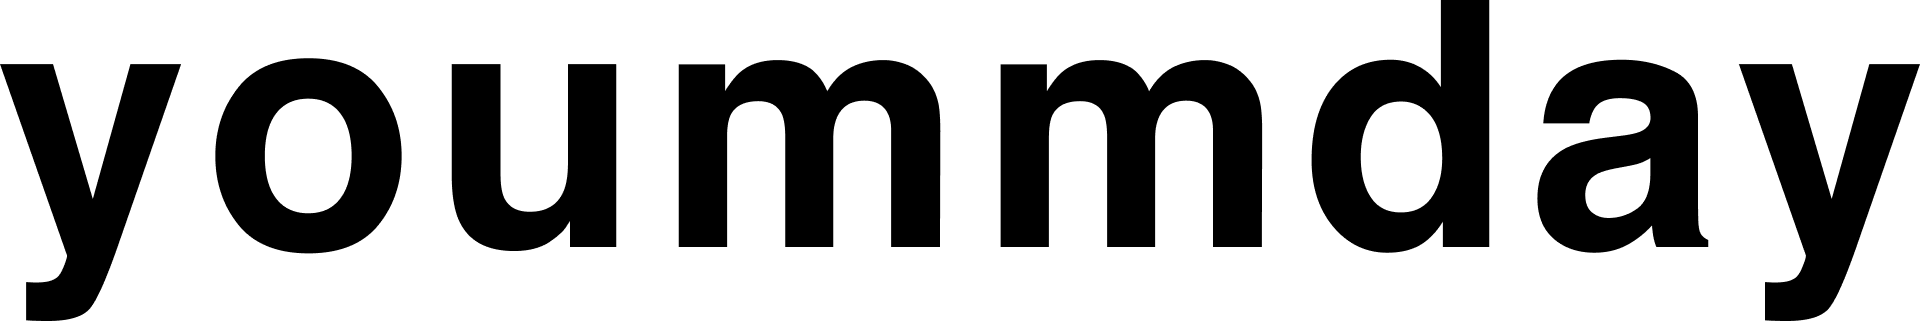 Yoummday logo blackTransparent_1920x321px-1